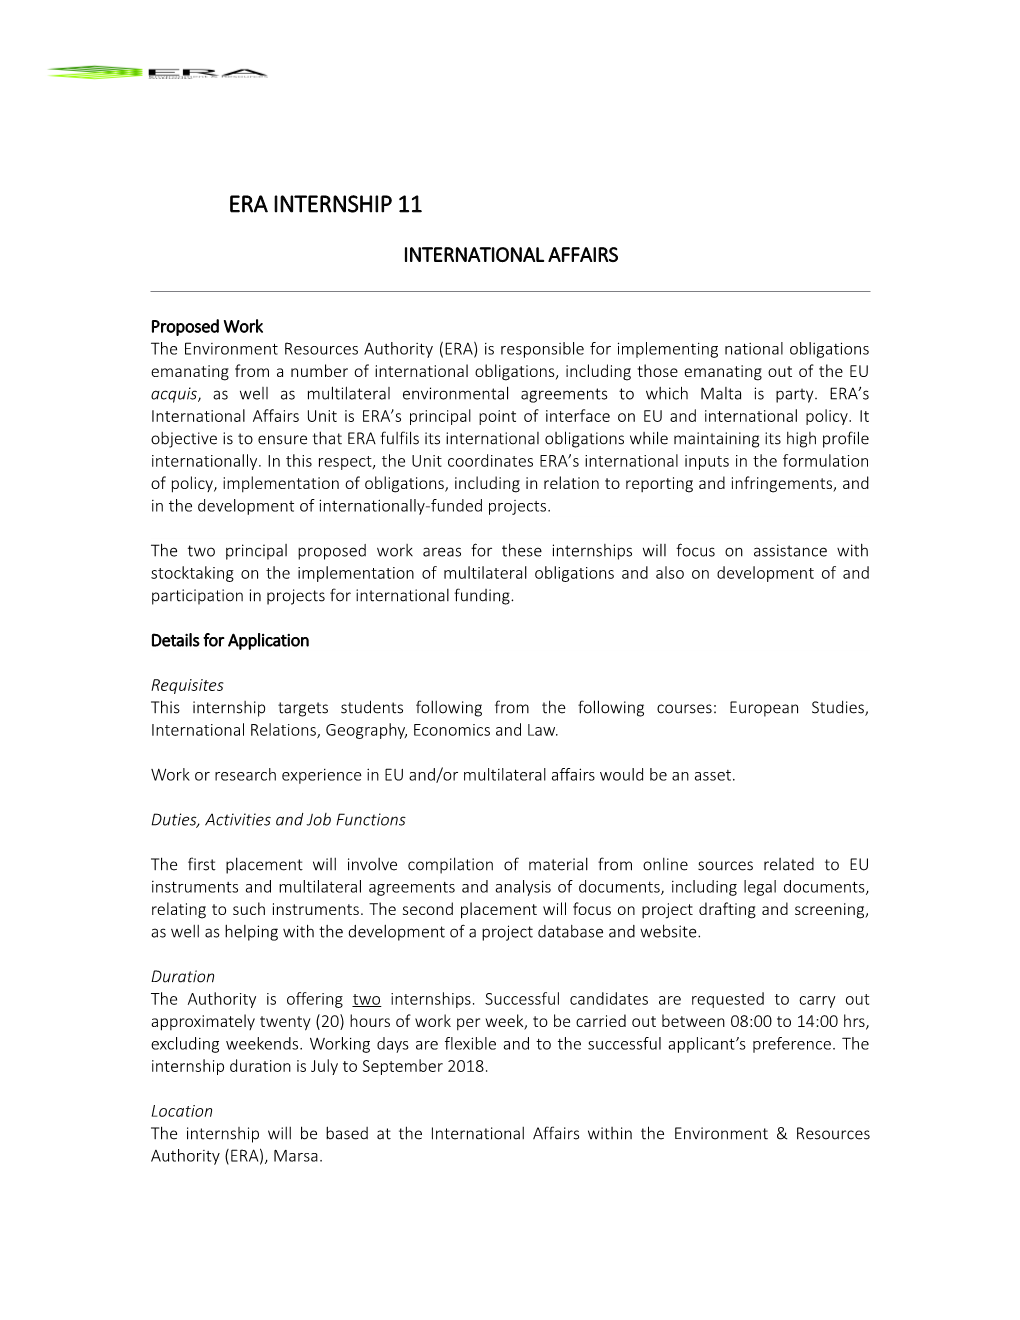 ERA-Internship-No(Complement)-Template-Final-13Mar18 International Affairs